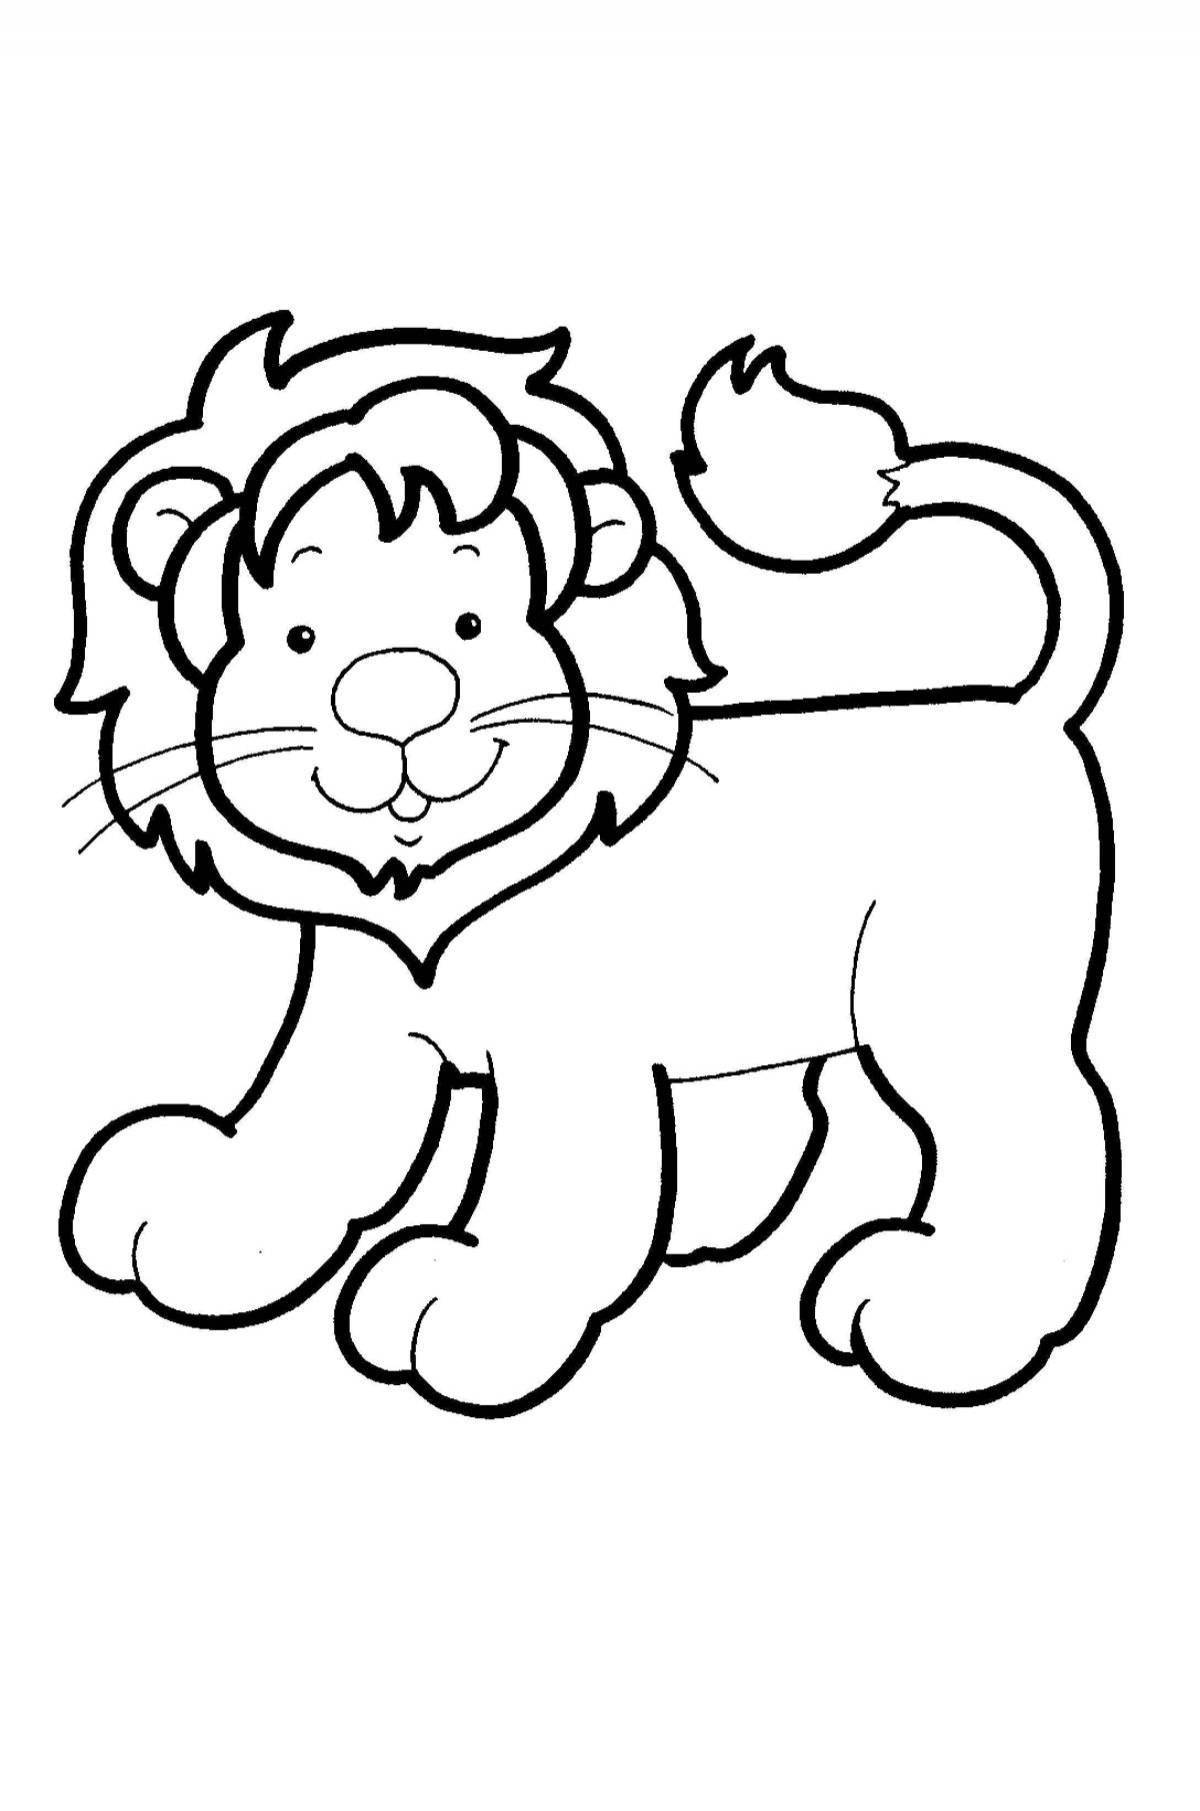 Яркая раскраска львенка для дошкольников